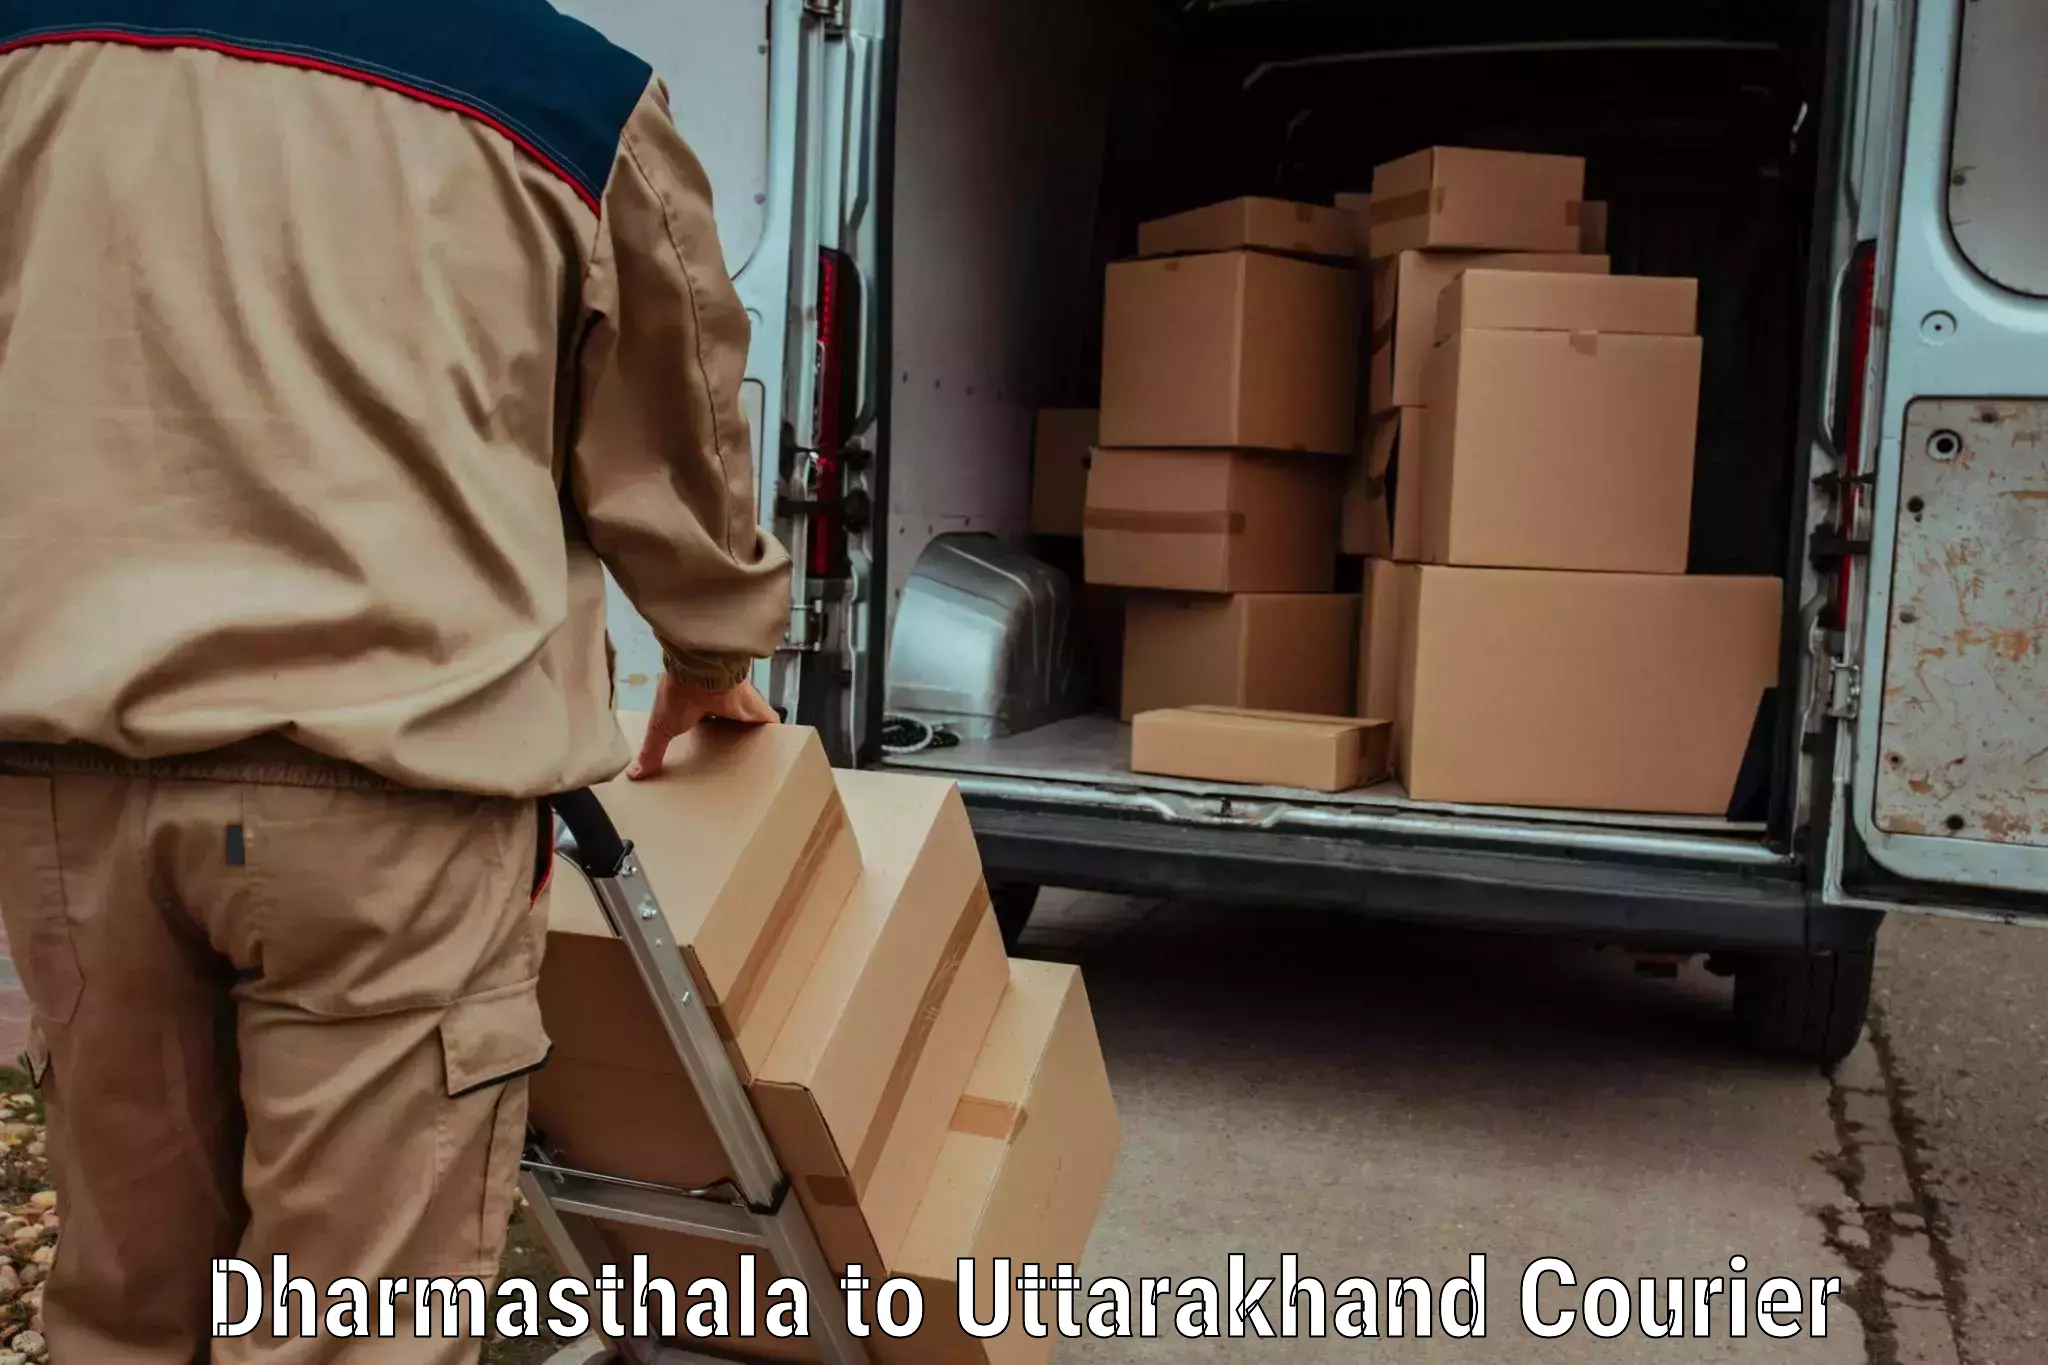 Multi-service courier options Dharmasthala to Karnaprayag